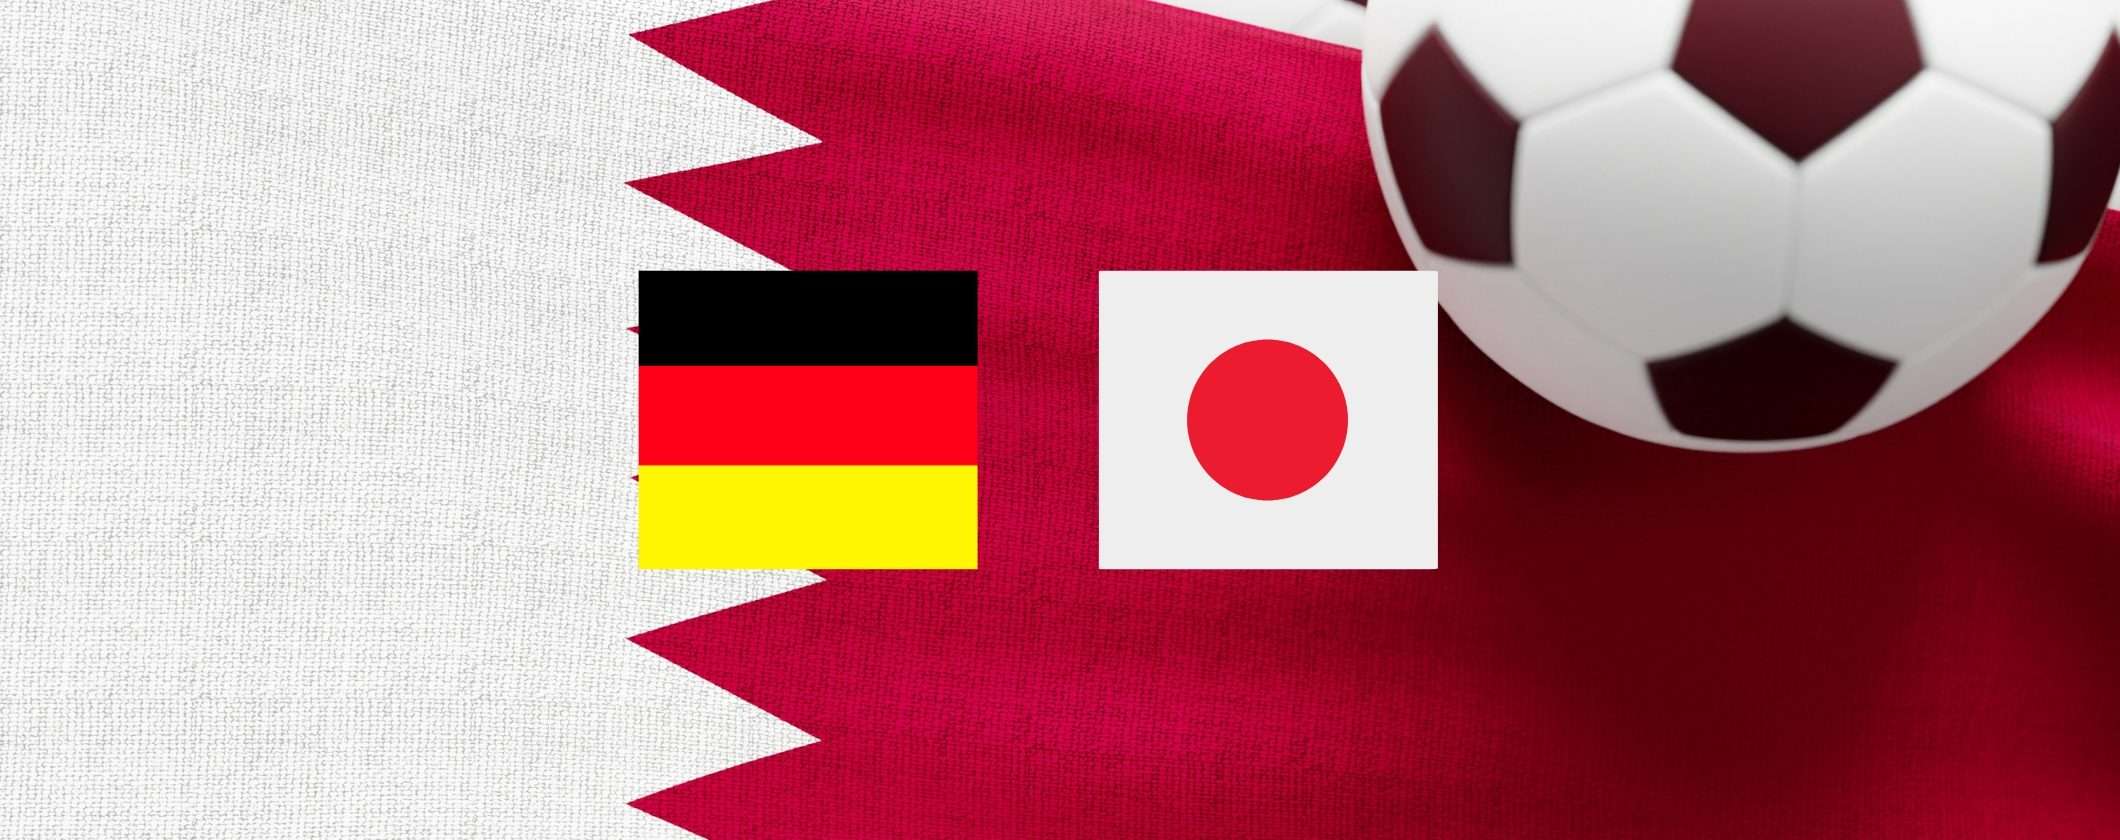 Come vedere Germania-Giappone in streaming fuori dall'Italia